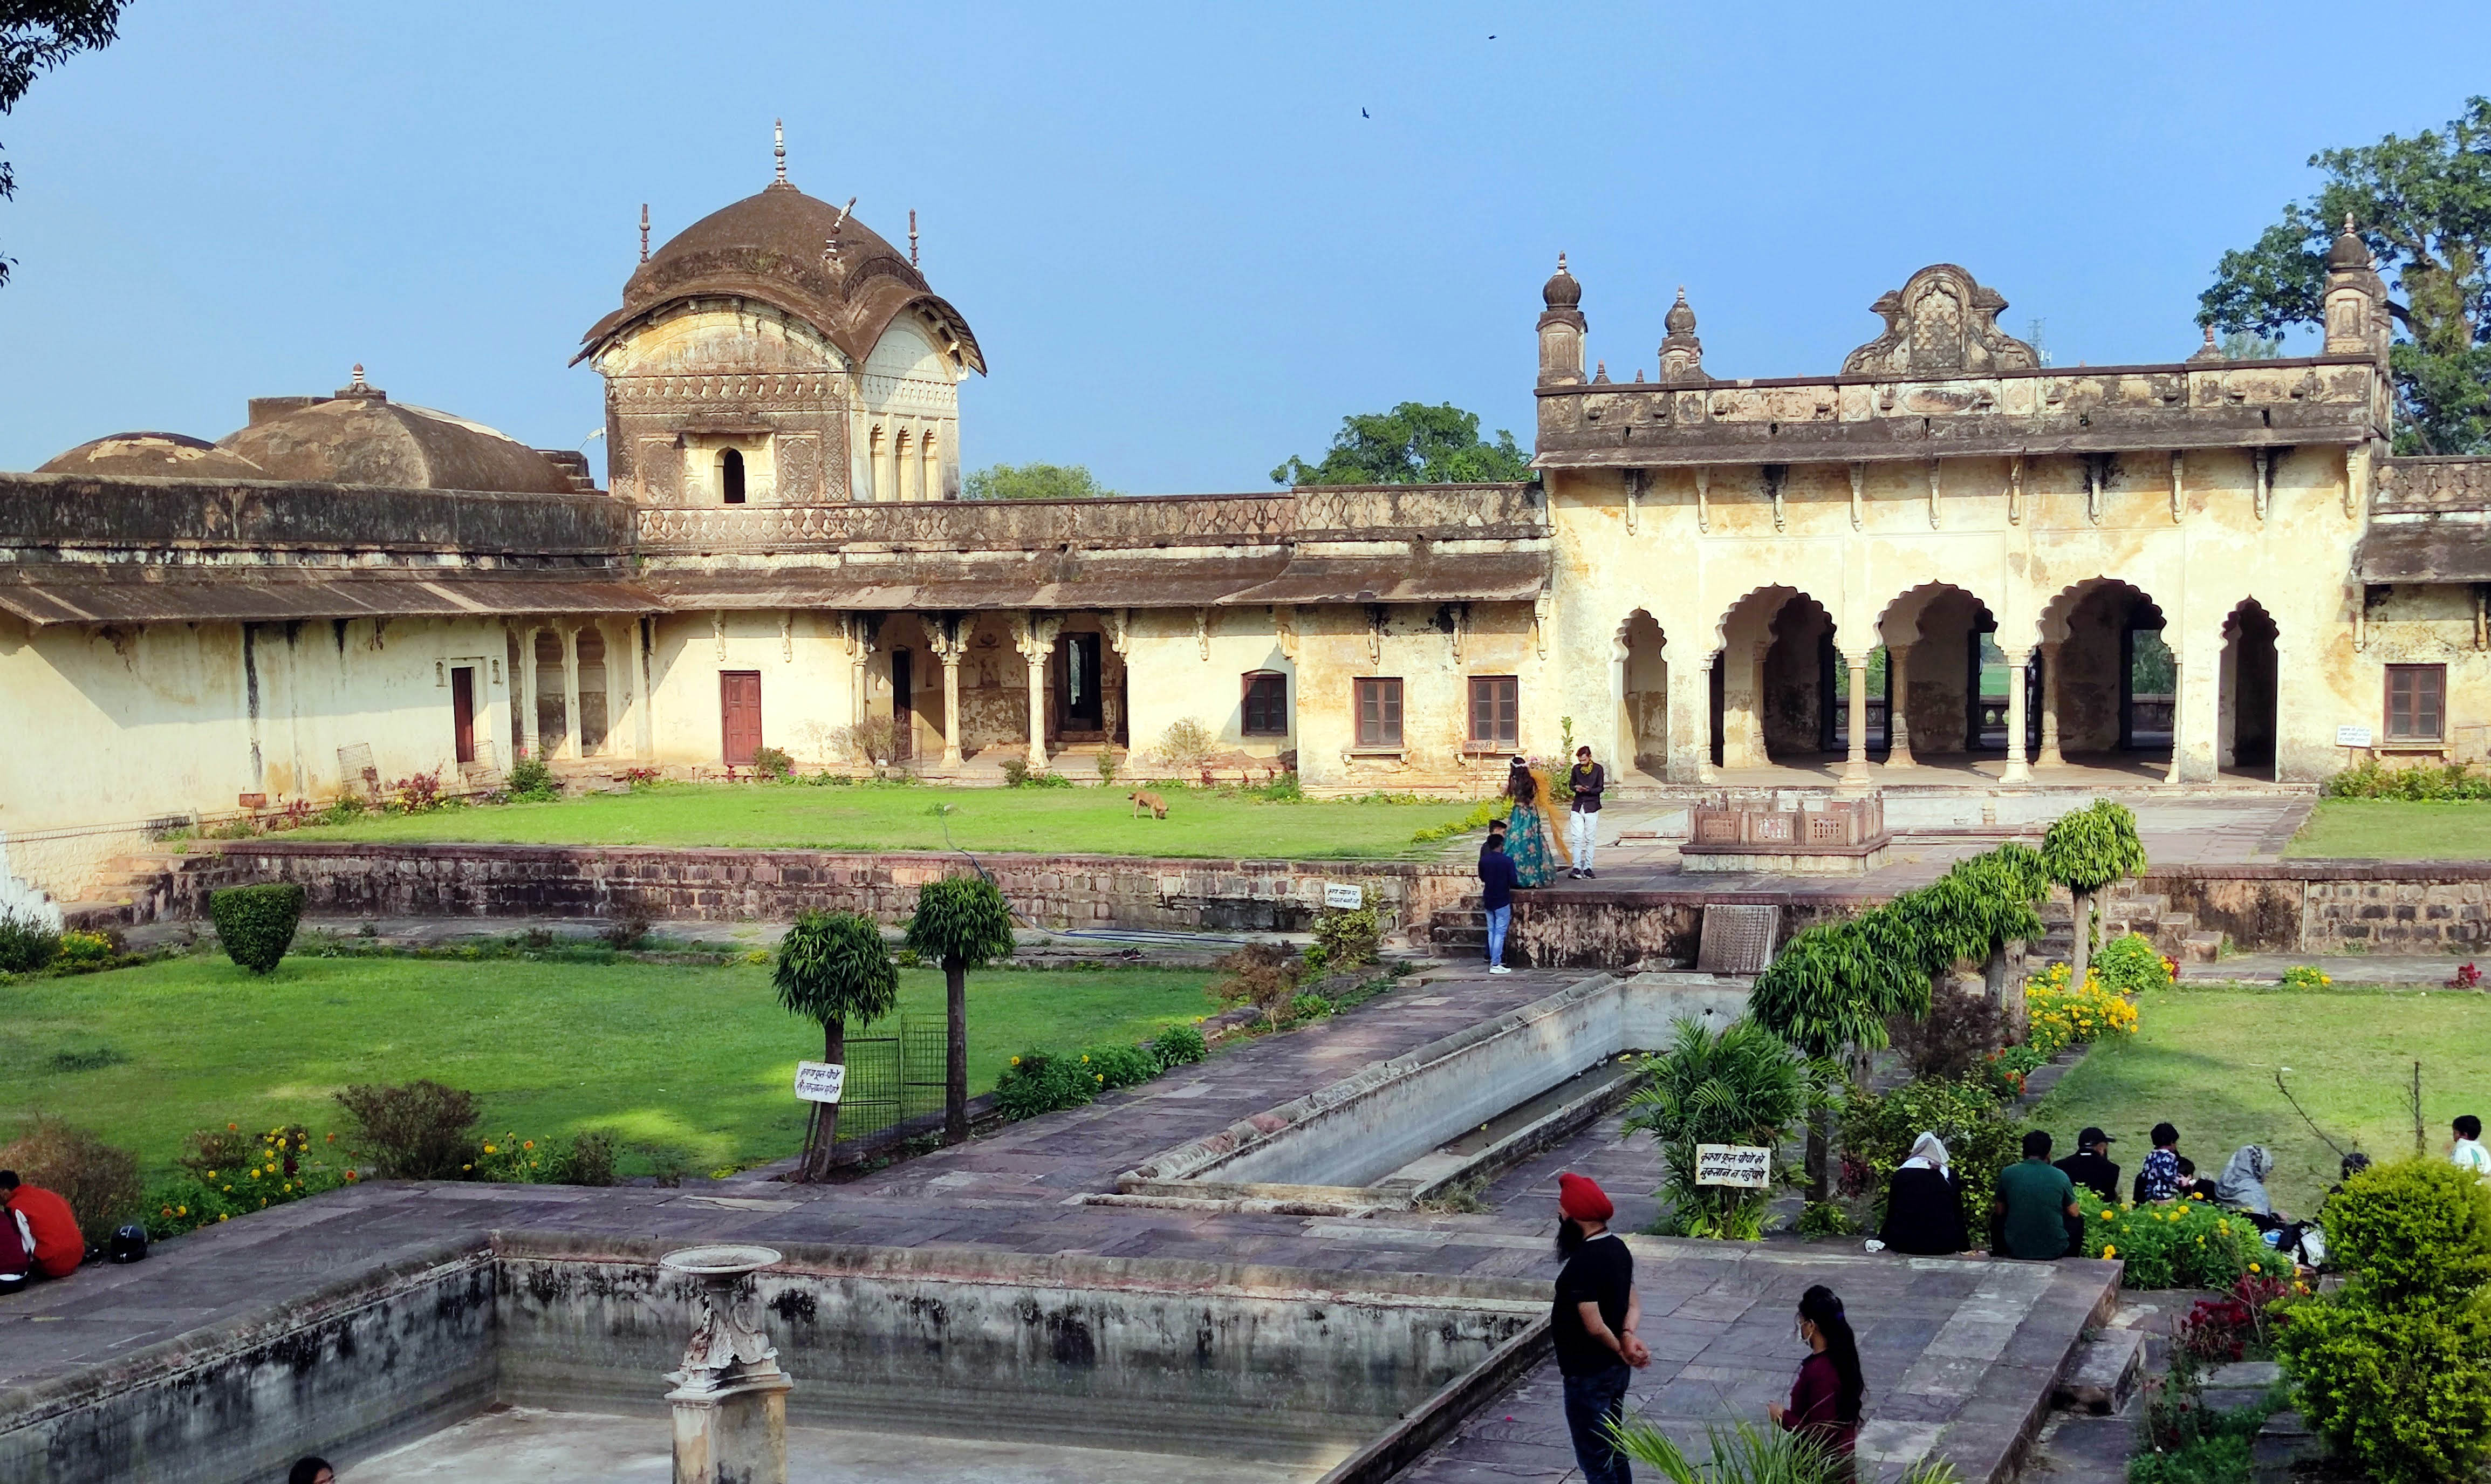 Islamnagar was named Jagdishpur